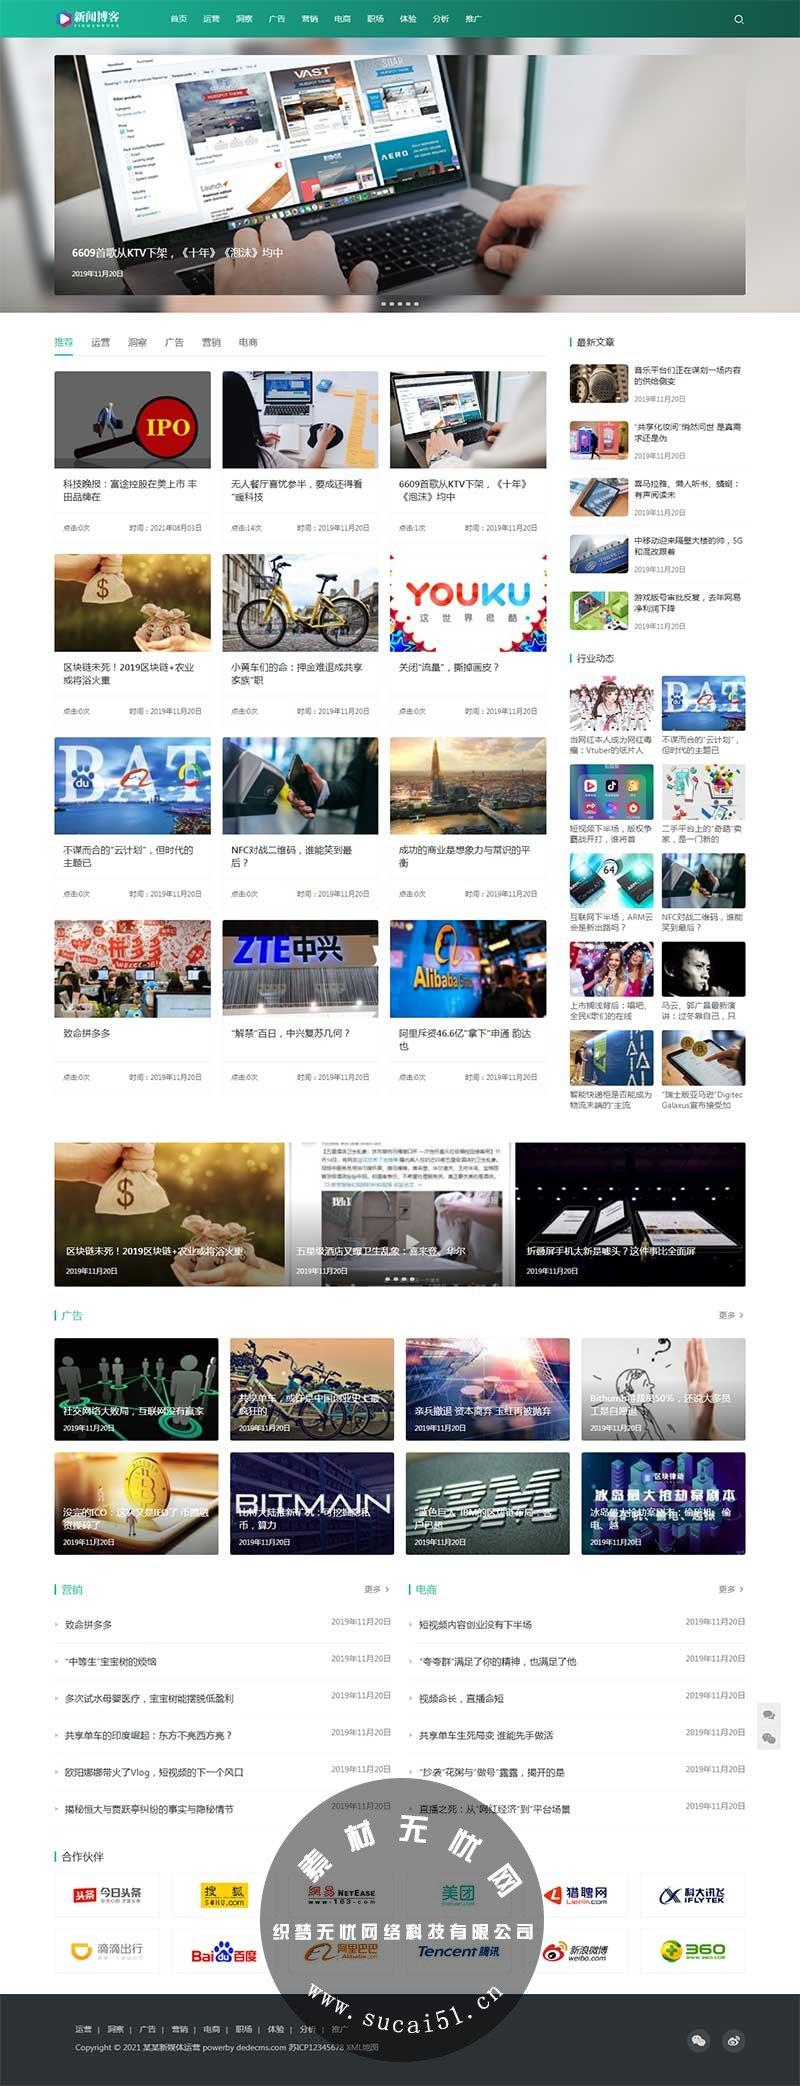 (自适应手机版)响应式seo运营博客美文资讯新闻类网站模板下载